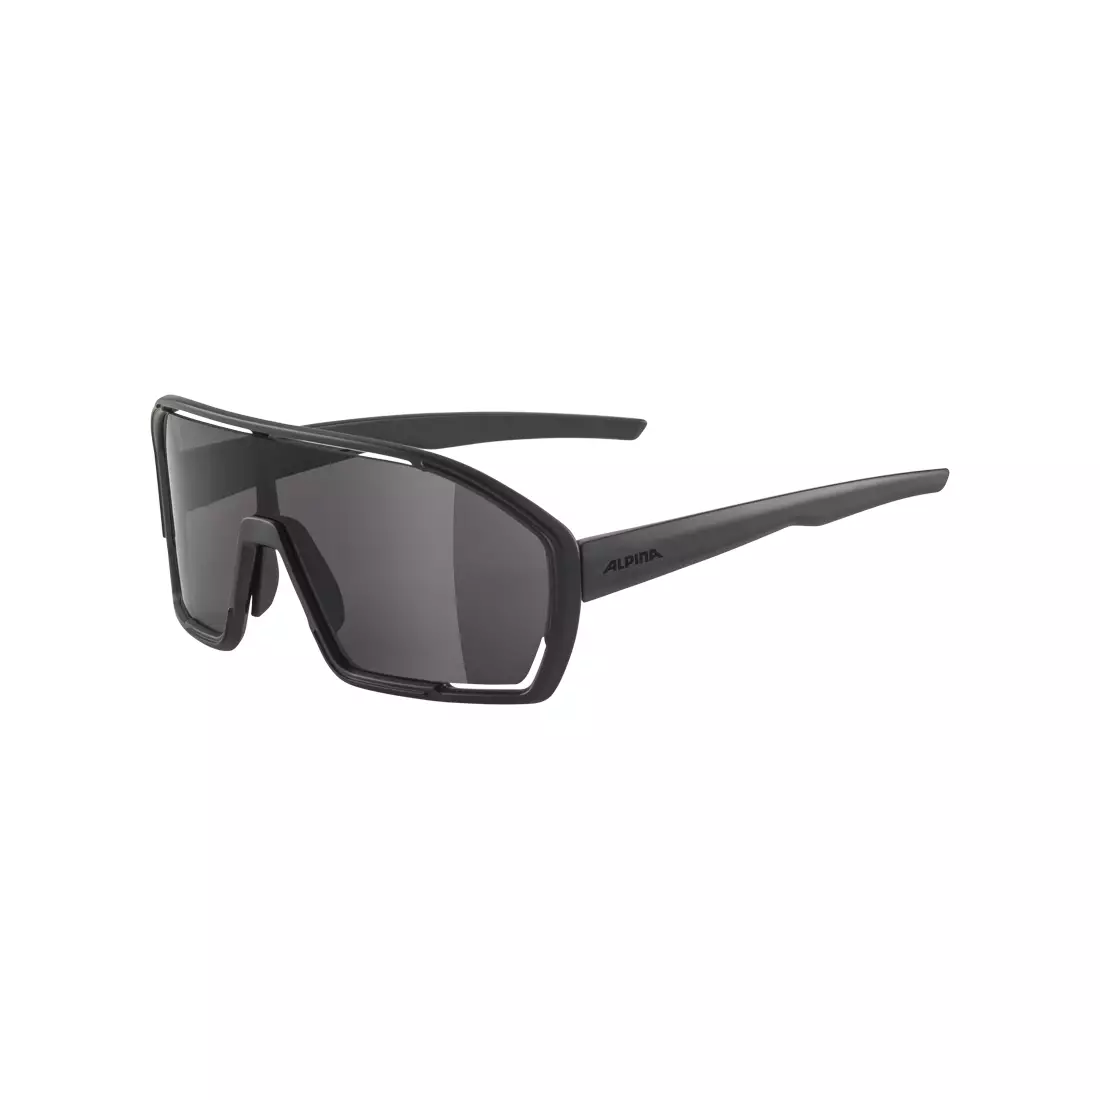 ALPINA Sports glasses BONFIRE BLACK MATT - MIRROR BLACK, A8687431